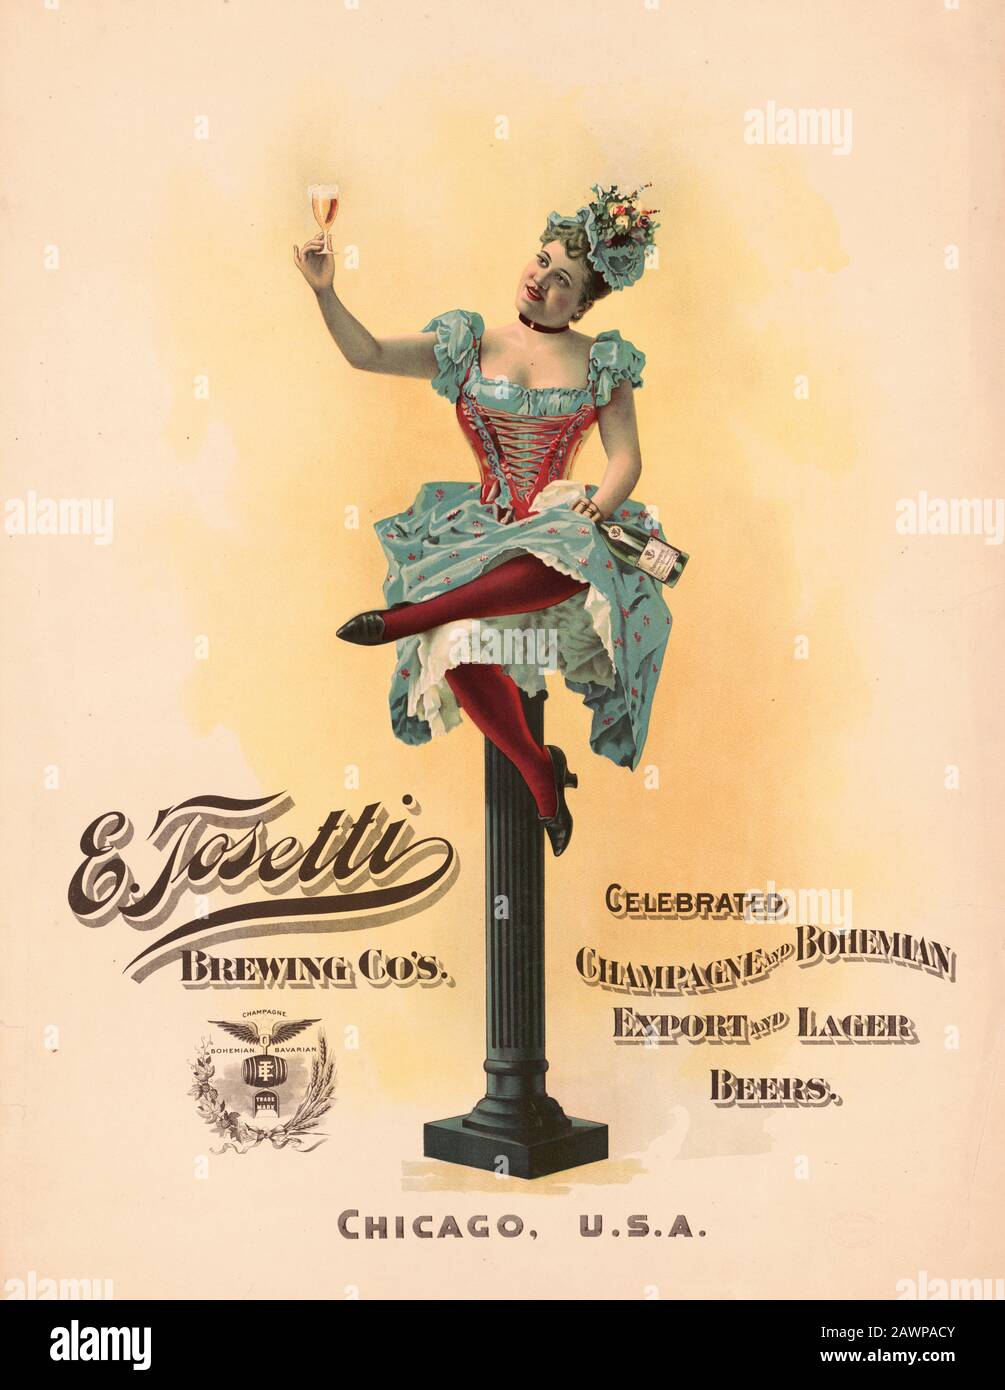 Il celebre champagne della Brewing Co di E. Tosetti, l'esportazione bohémien e le birre lager. 1894 Foto Stock